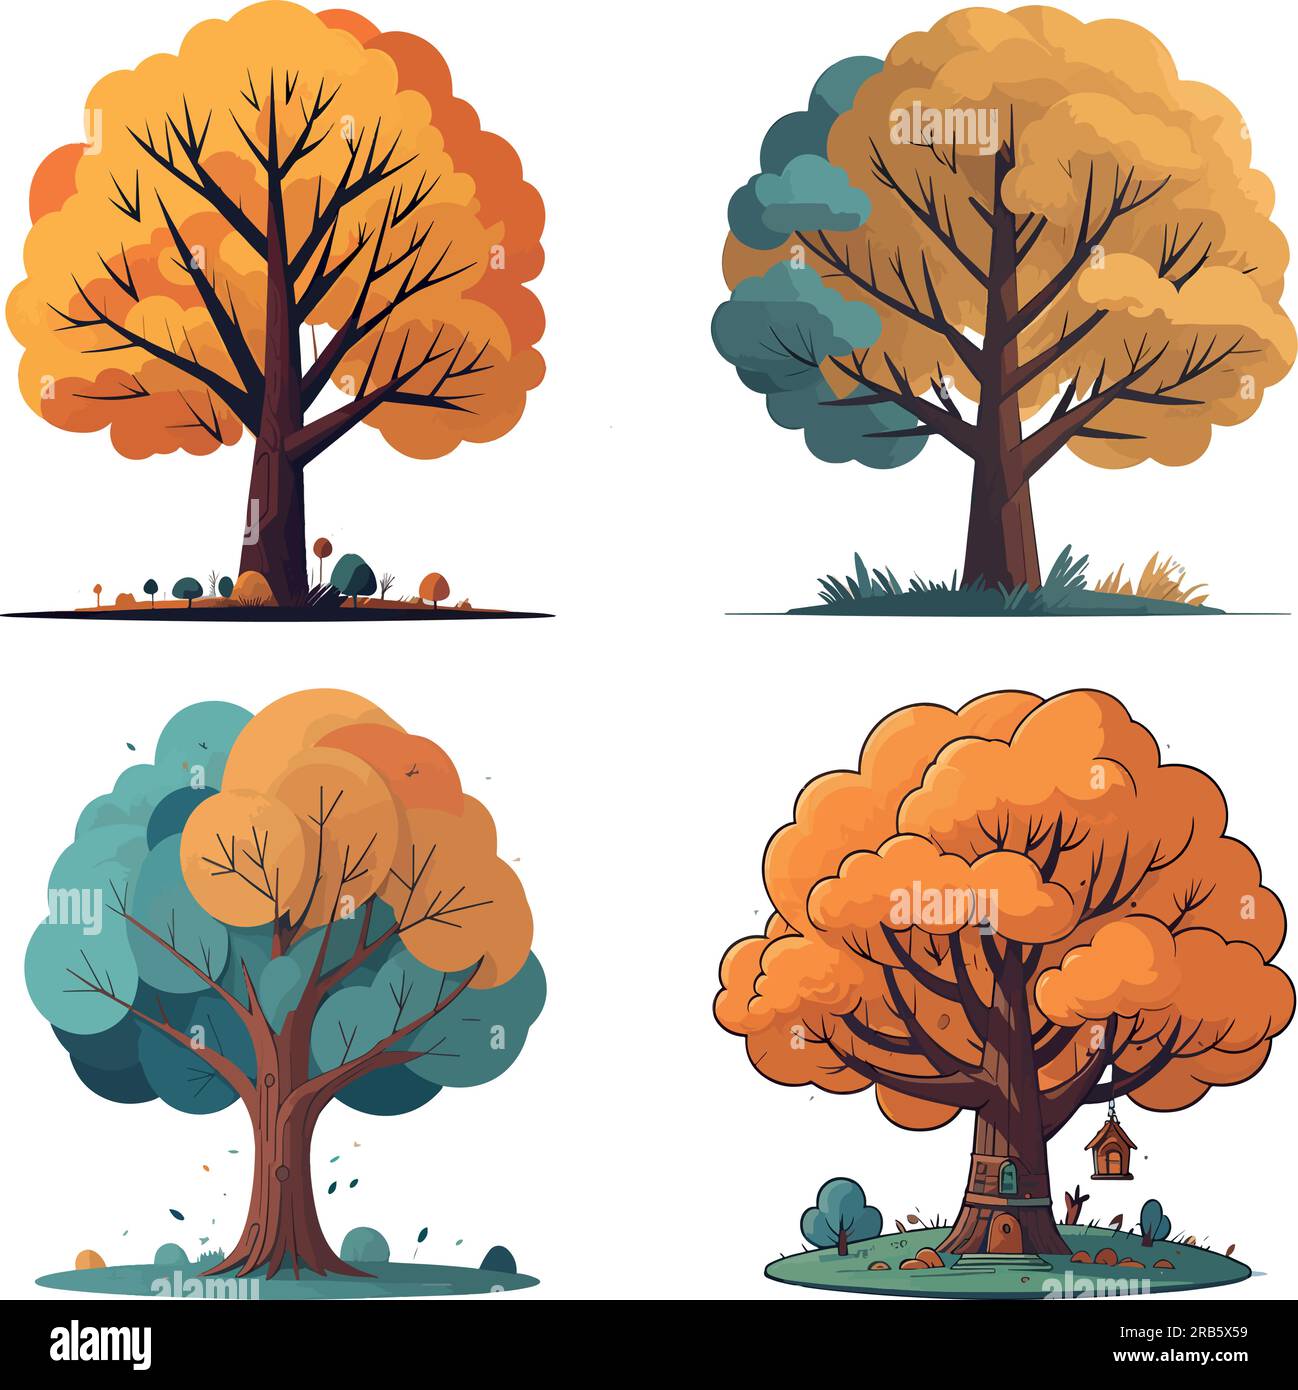 Gran fantasía árbol mágico vector art set Ilustración del Vector